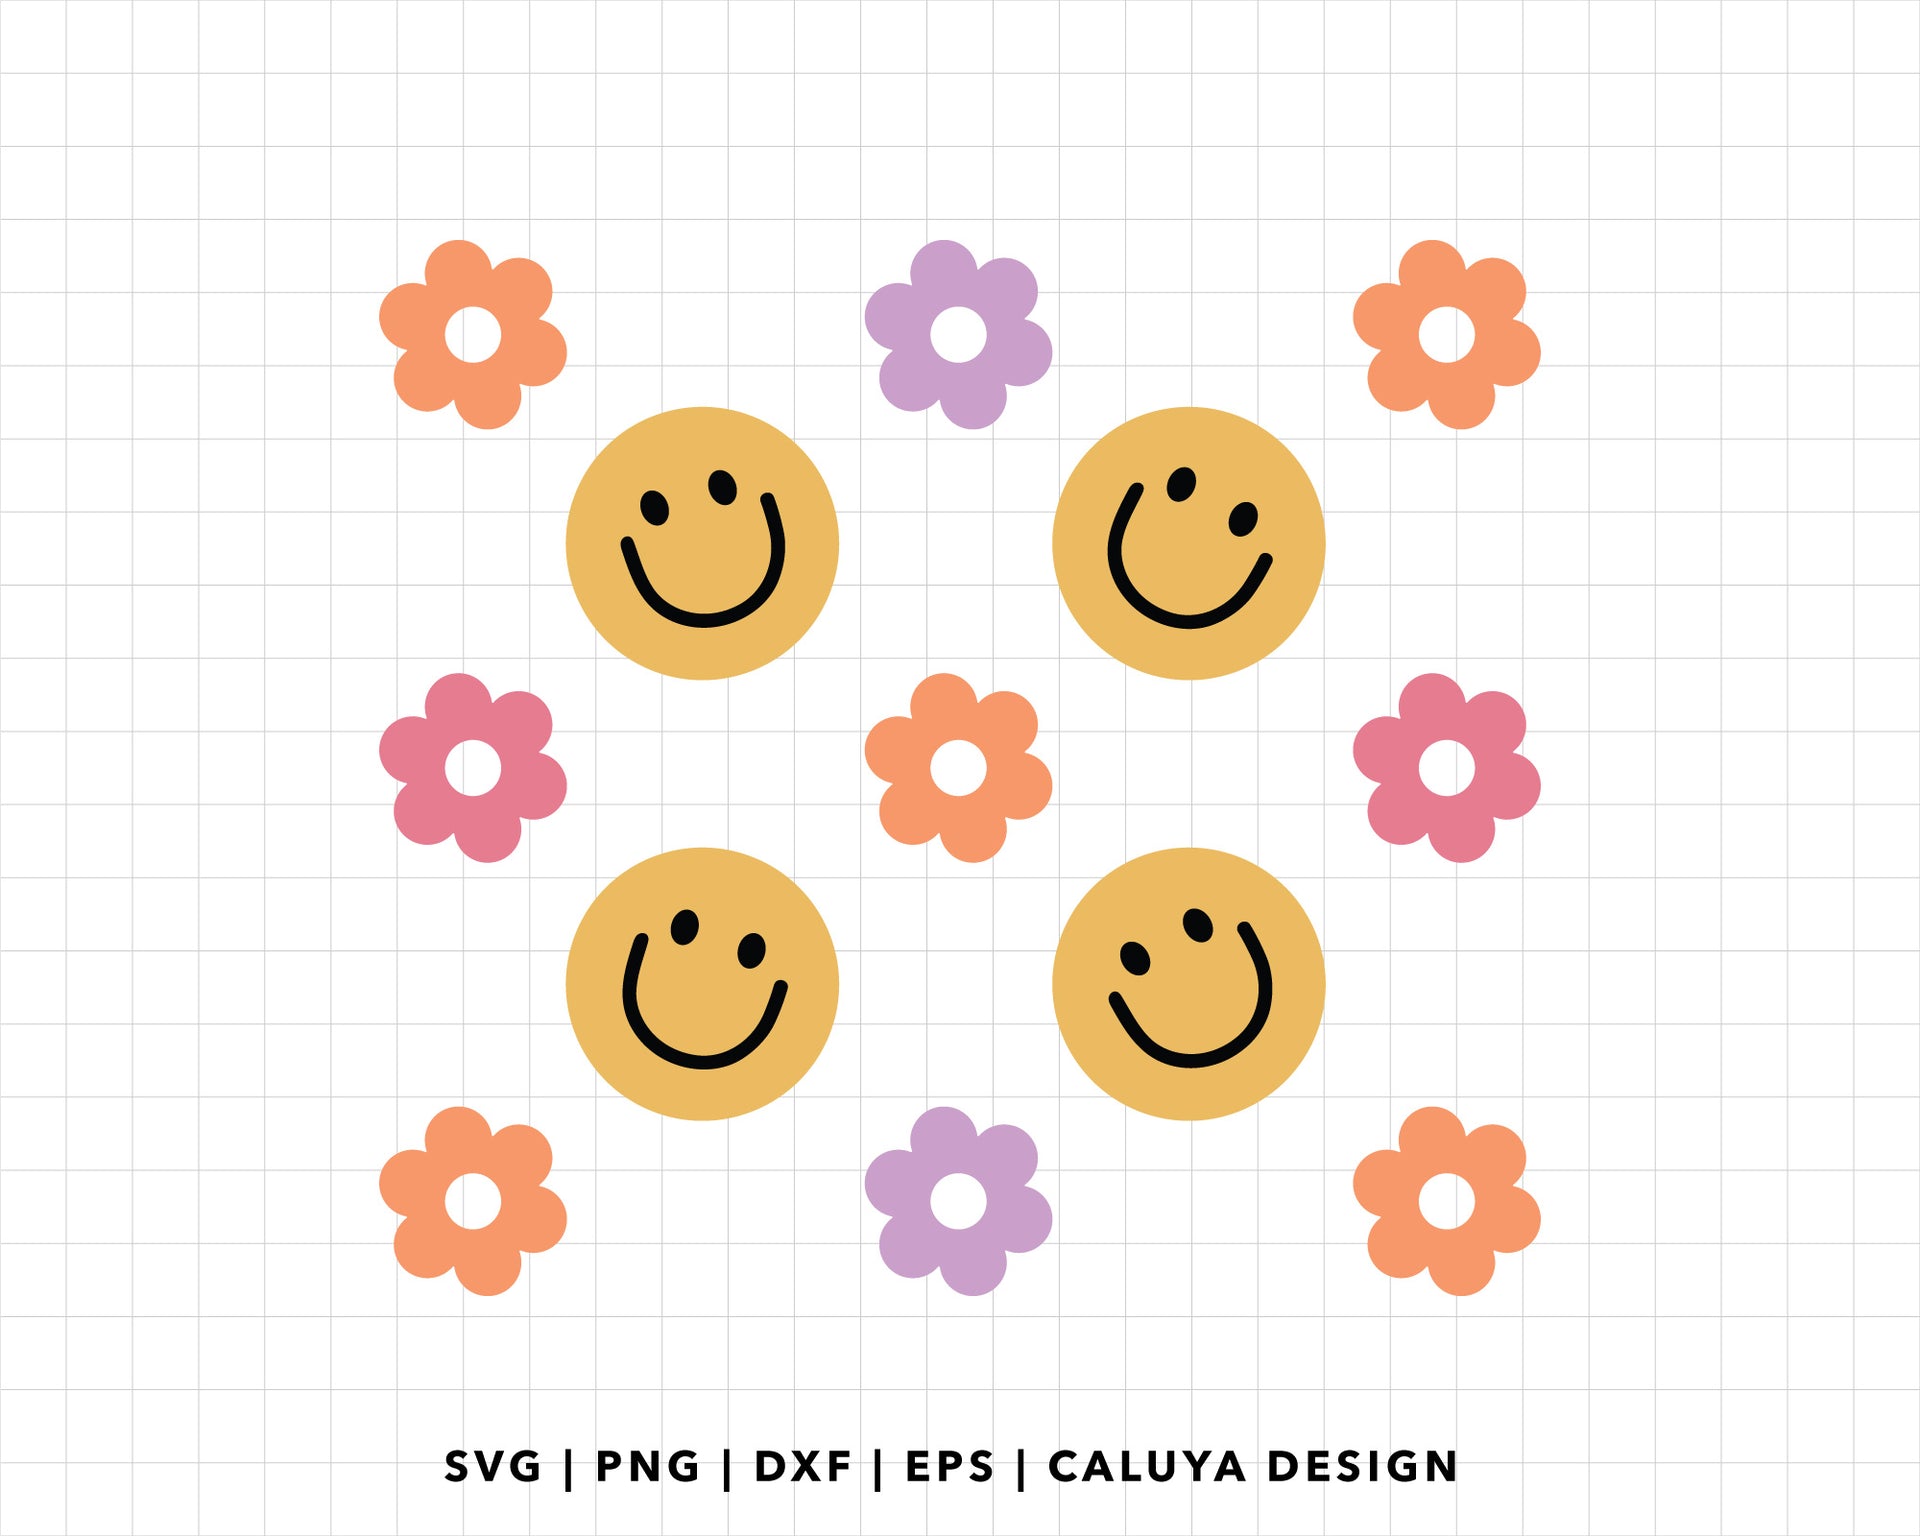 Smiley Face Cardstock Cutouts for Freshies -  Hong Kong